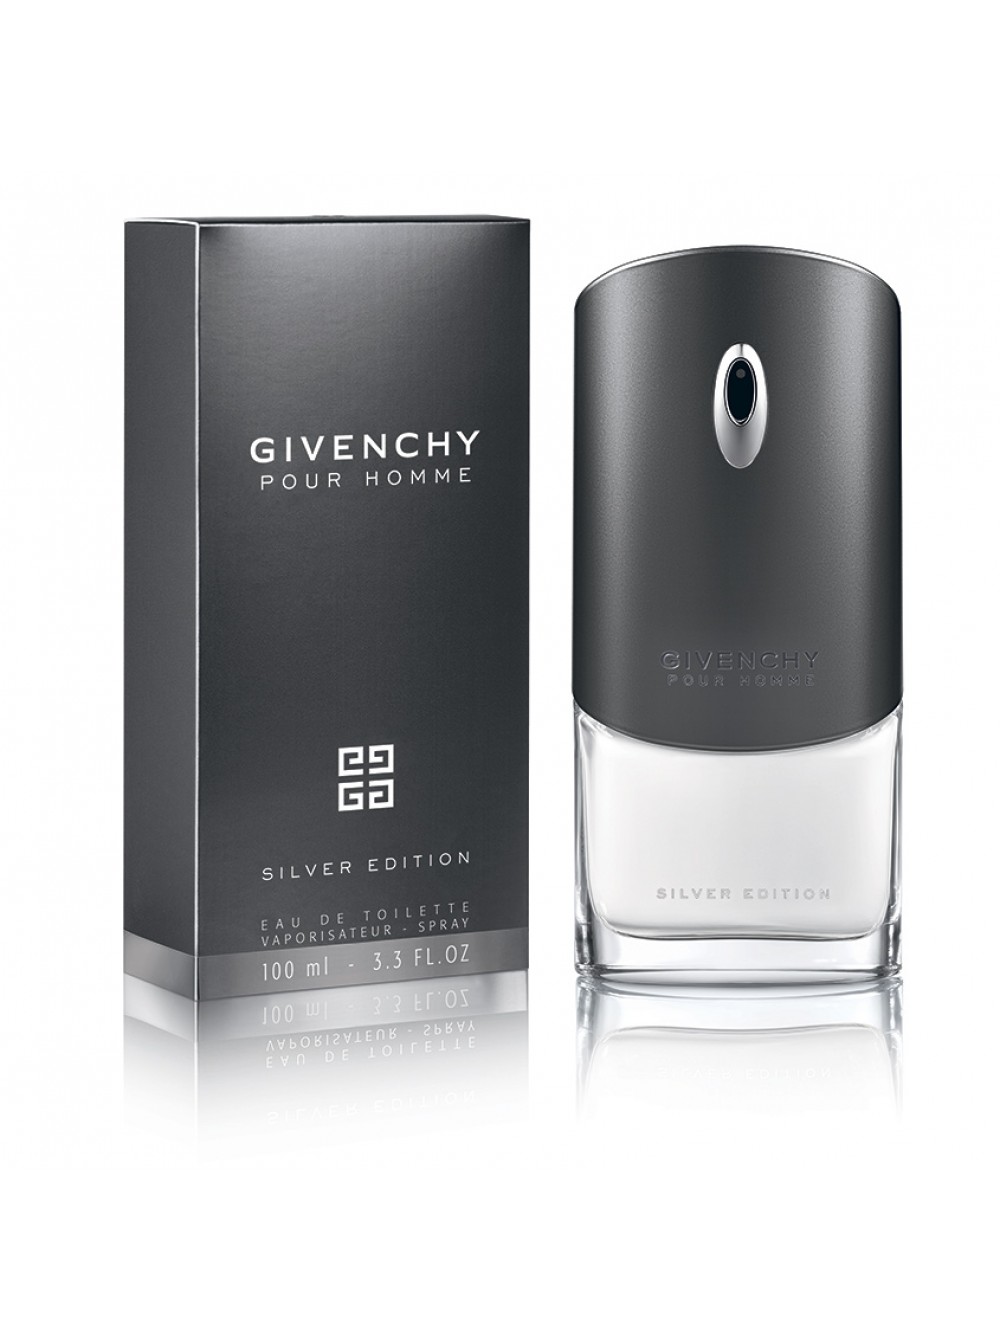 Живанши хом мужские. Givenchy Givenchy pour homme, 100 ml. Givenchy pour homme Silver Edition. Givenchy pour homme 100ml мужские.